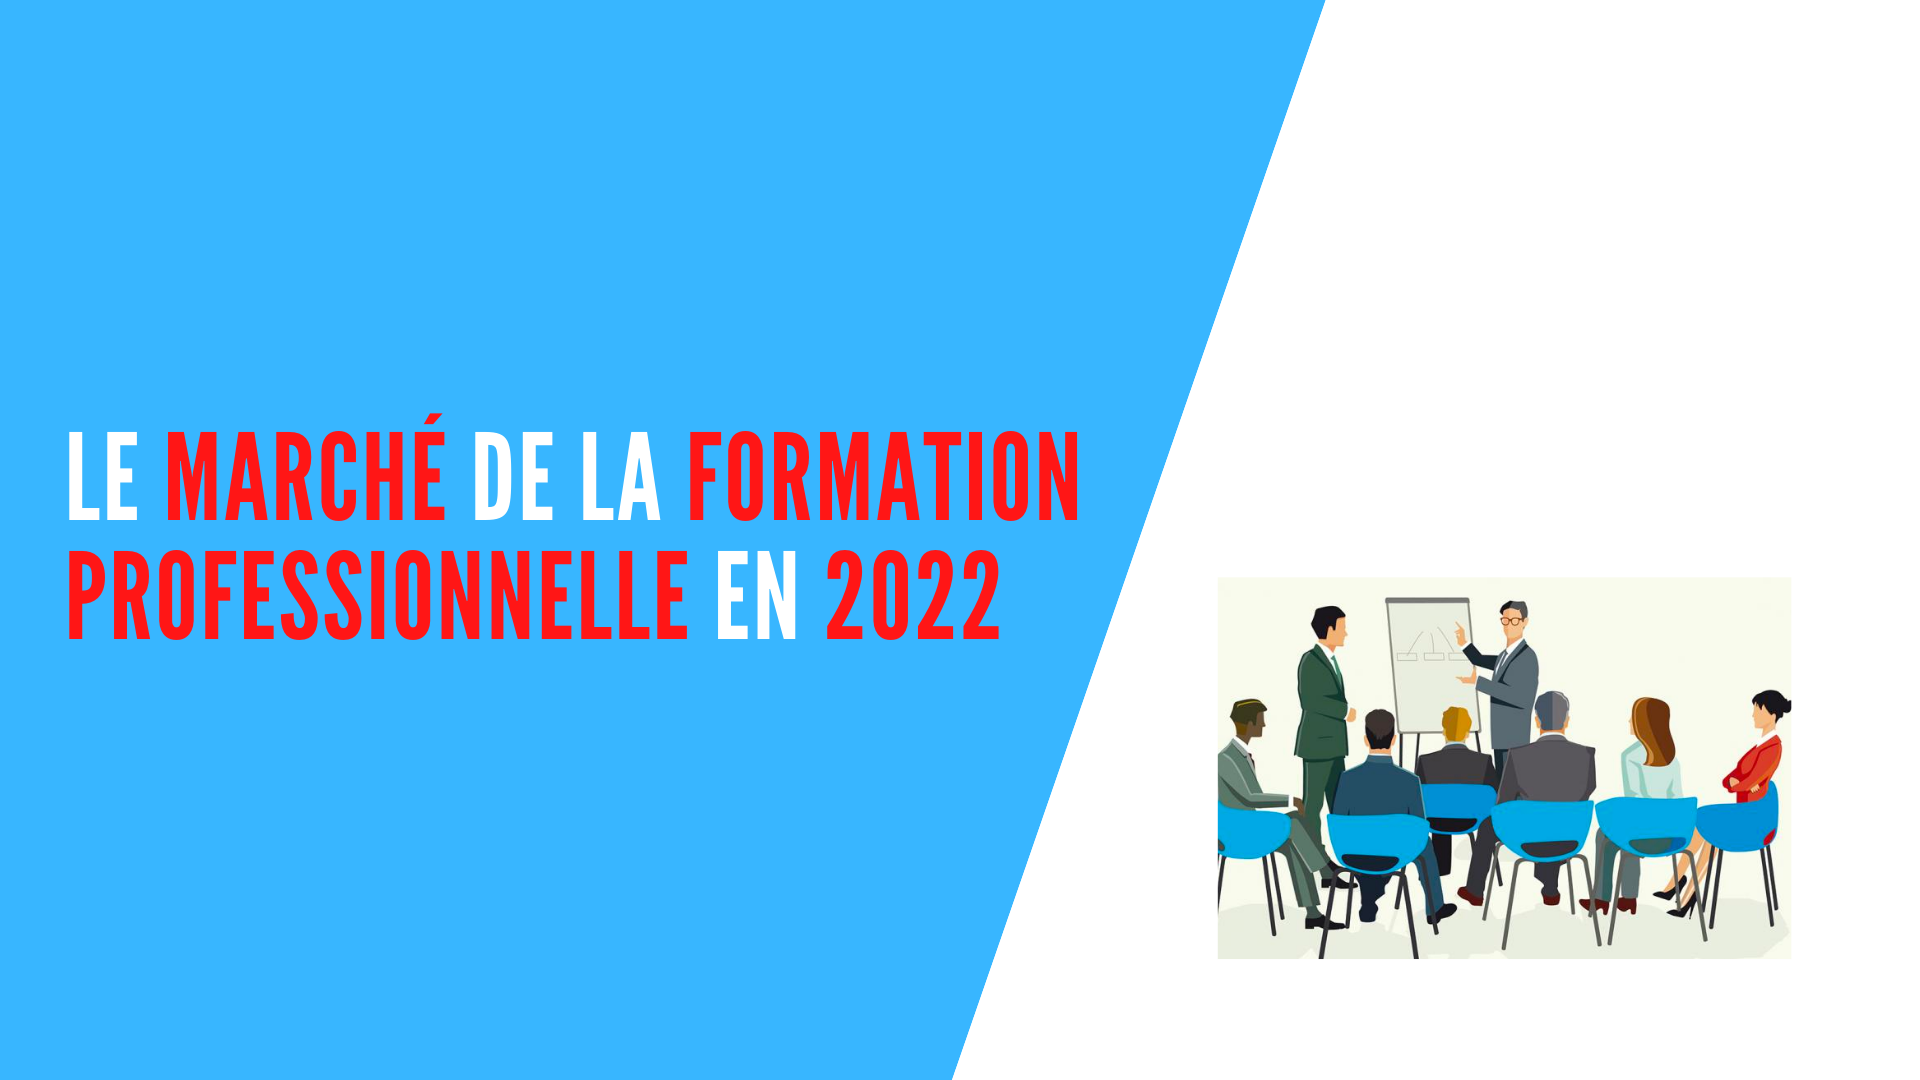 You are currently viewing Le marché de la formation professionnelle en 2022